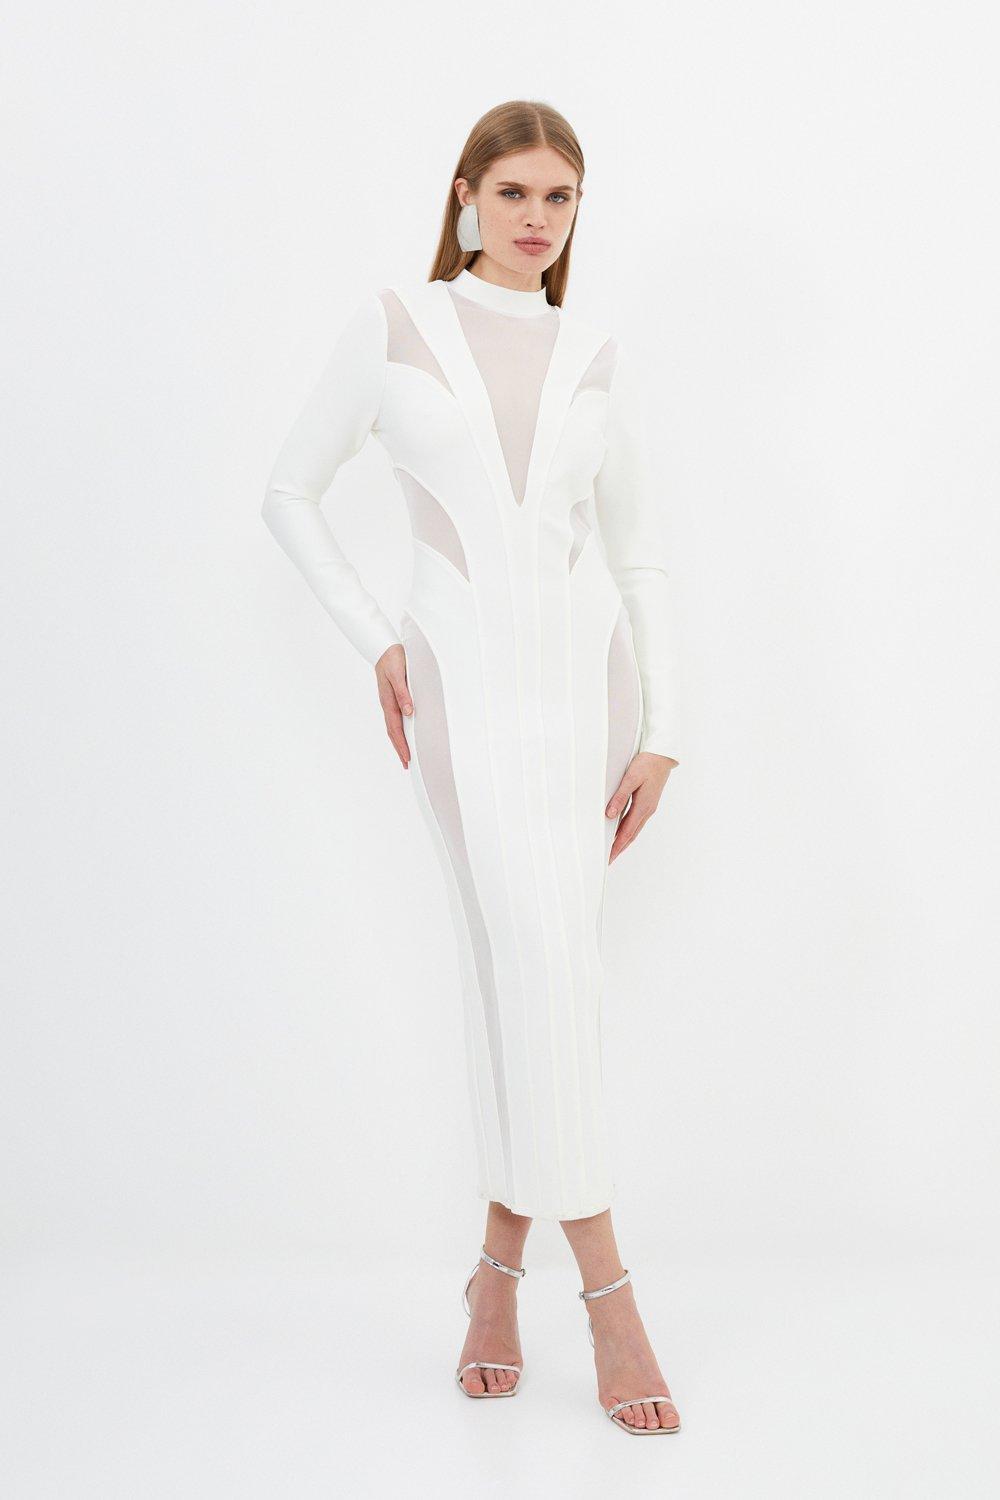 Форма фигуры Повязка Сетчатая деталь Трикотажное платье макси Karen Millen, белый